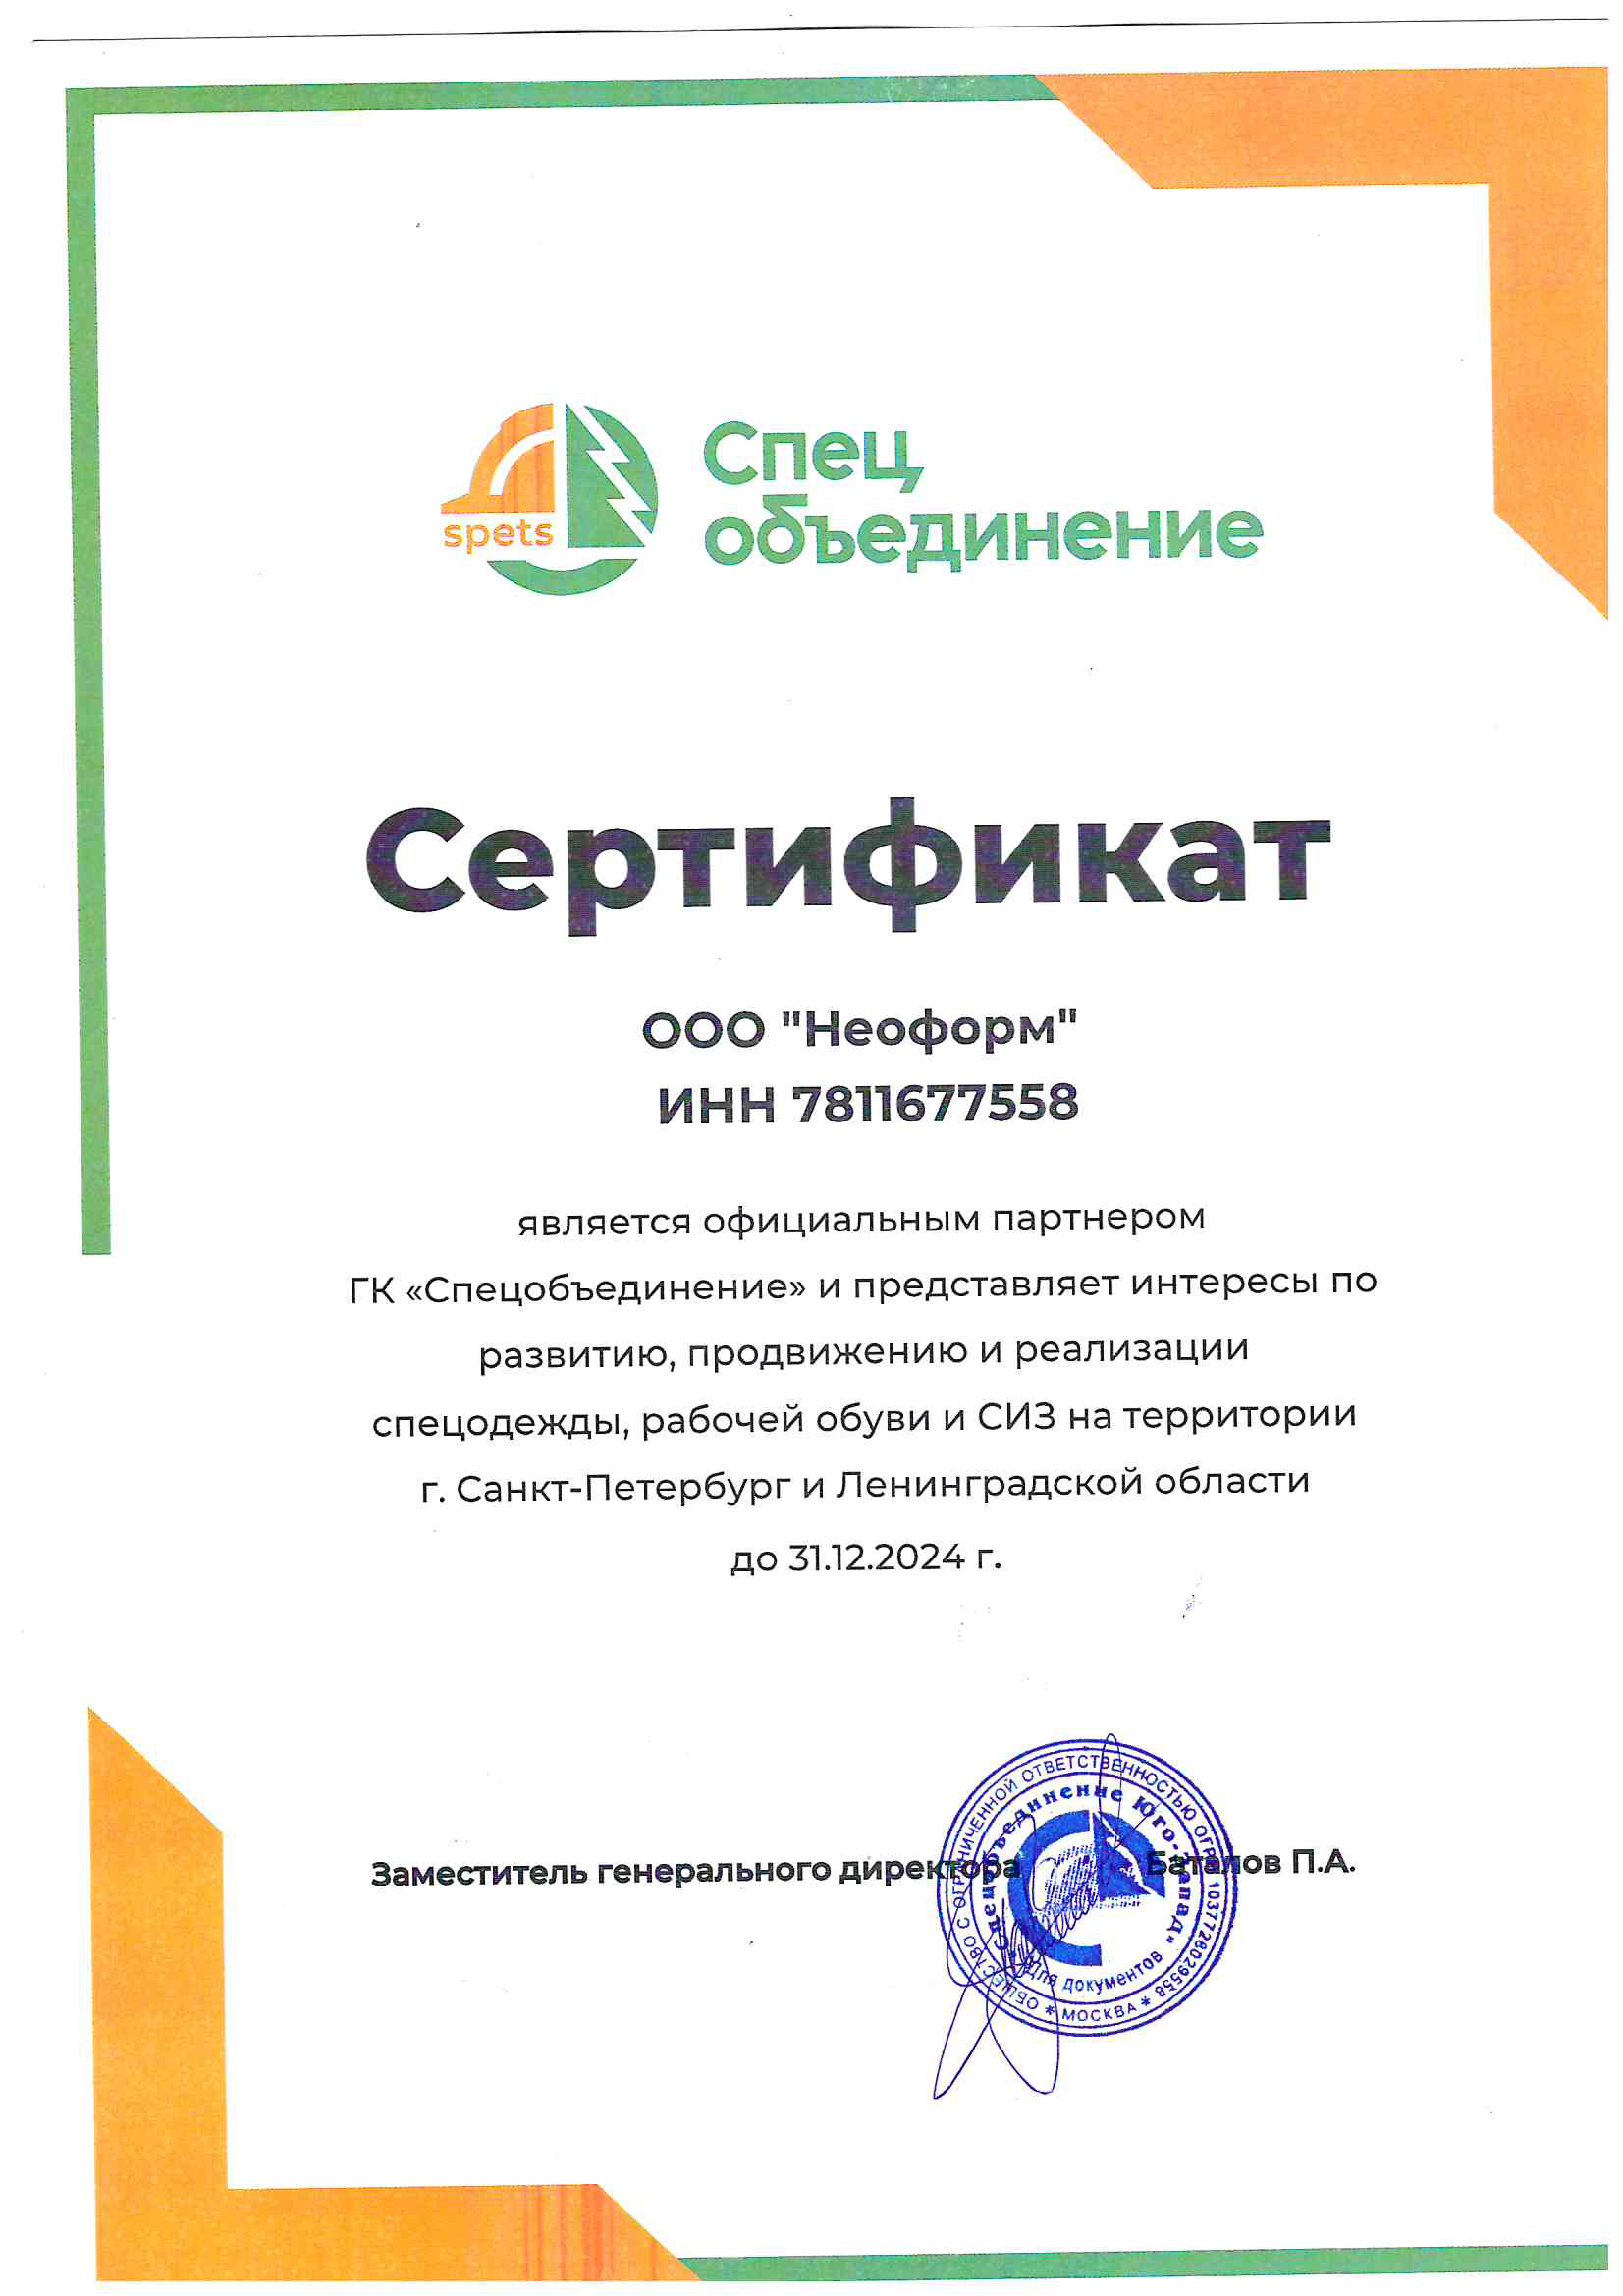 Сертификат партнера Спецобъединение